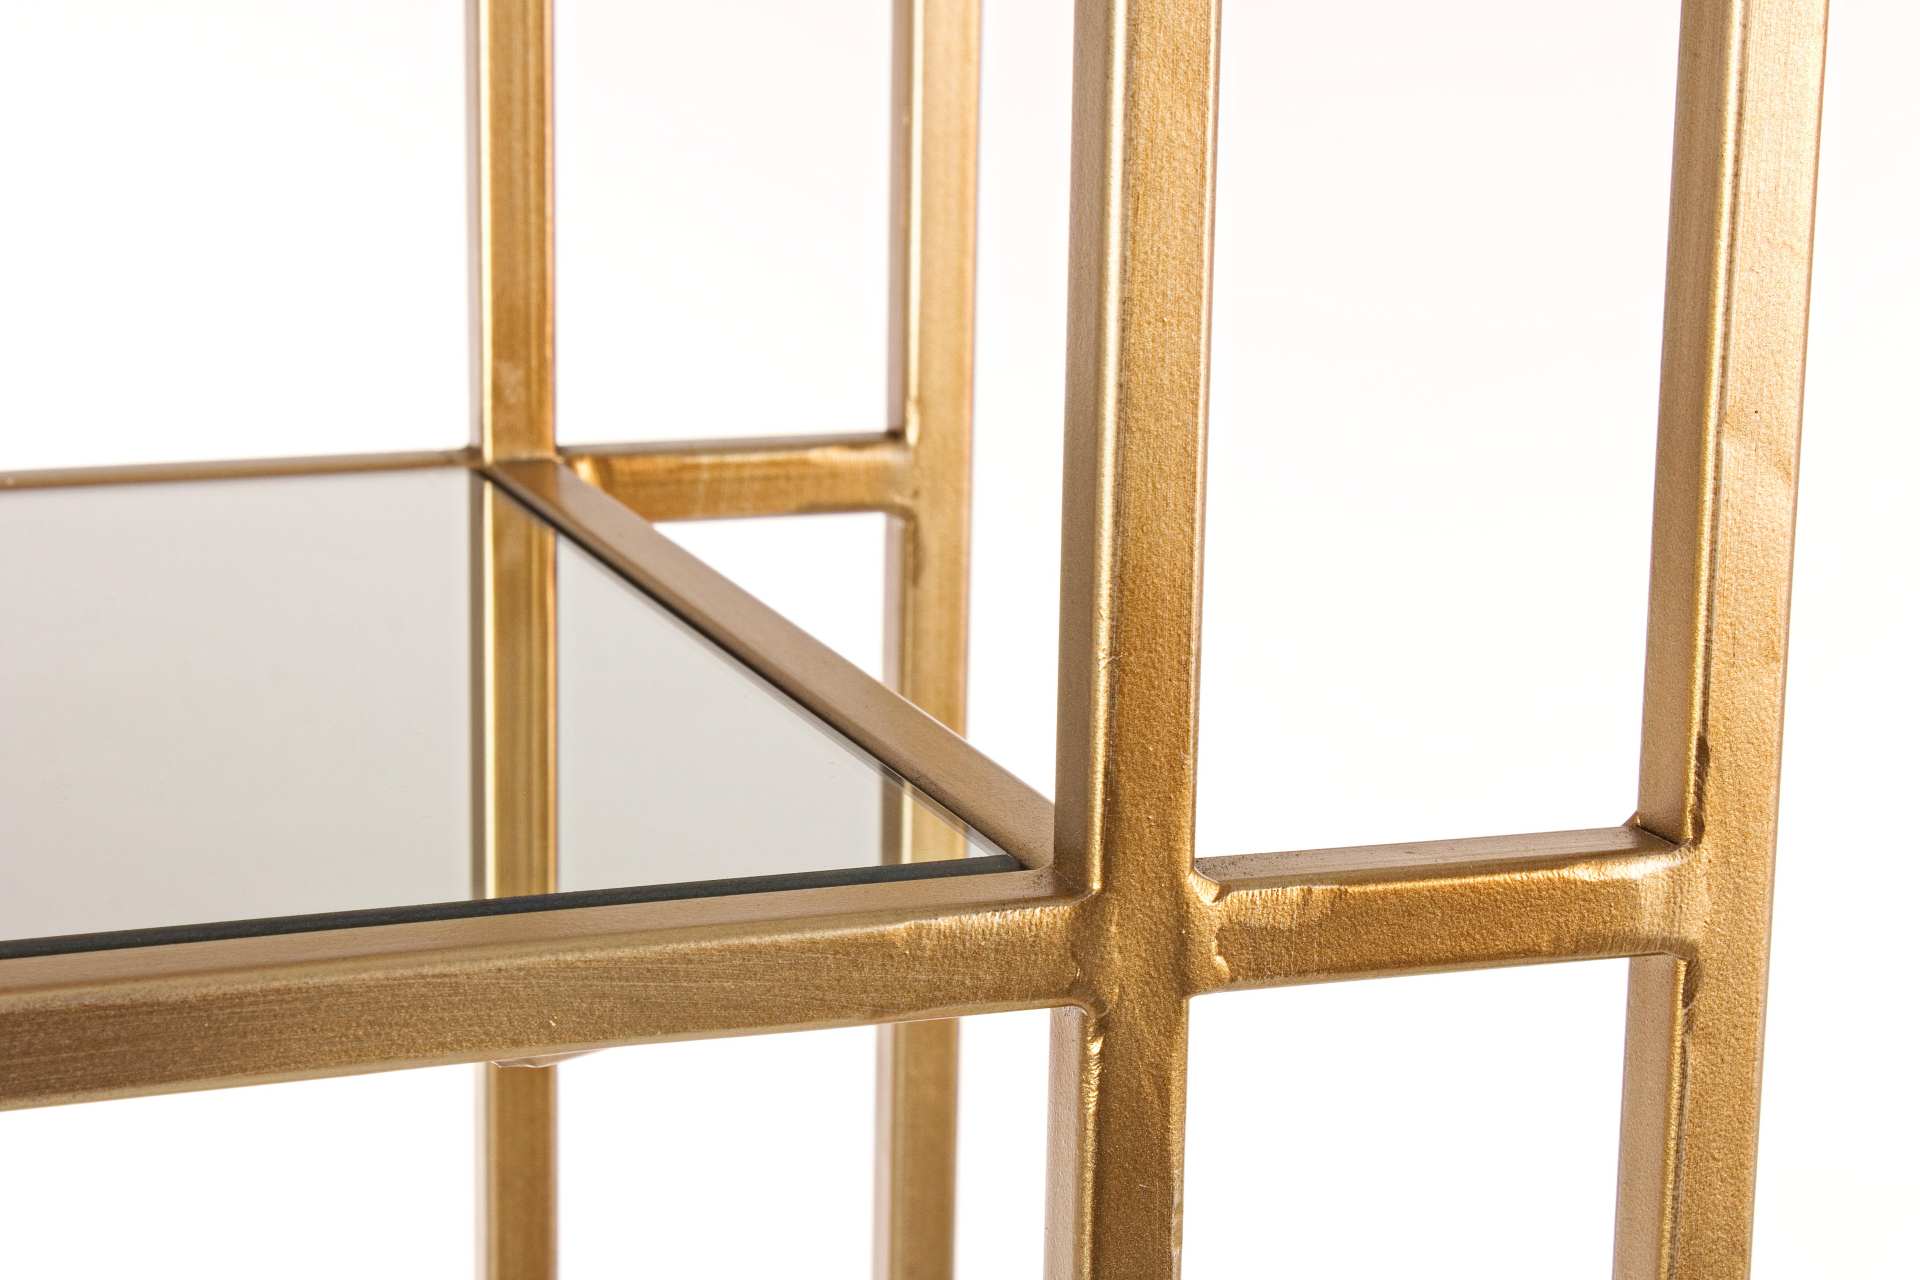 Das Regal Elenor überzeugt mit seinem klassischen Design. Gefertigt wurde es aus Glas. Das Gestell ist aus Metall und hat eine goldene Farbe. Das Regal verfügt über vier Fächer. Die Breite beträgt 68 cm.